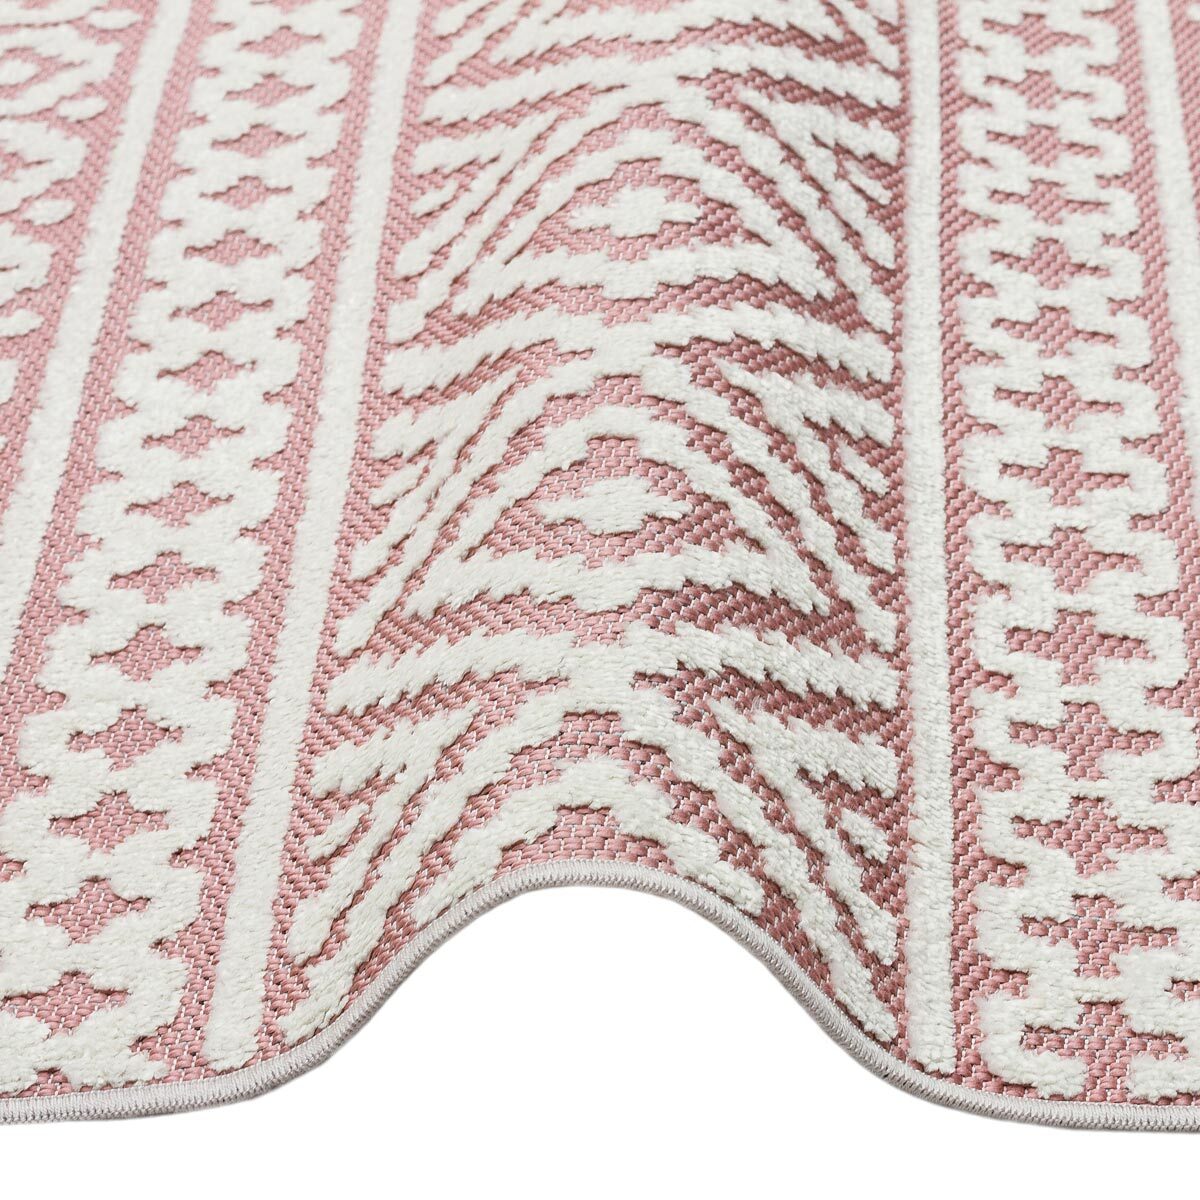 Jazz Pink Indoor/Outdoor Rug close up showing rug texture